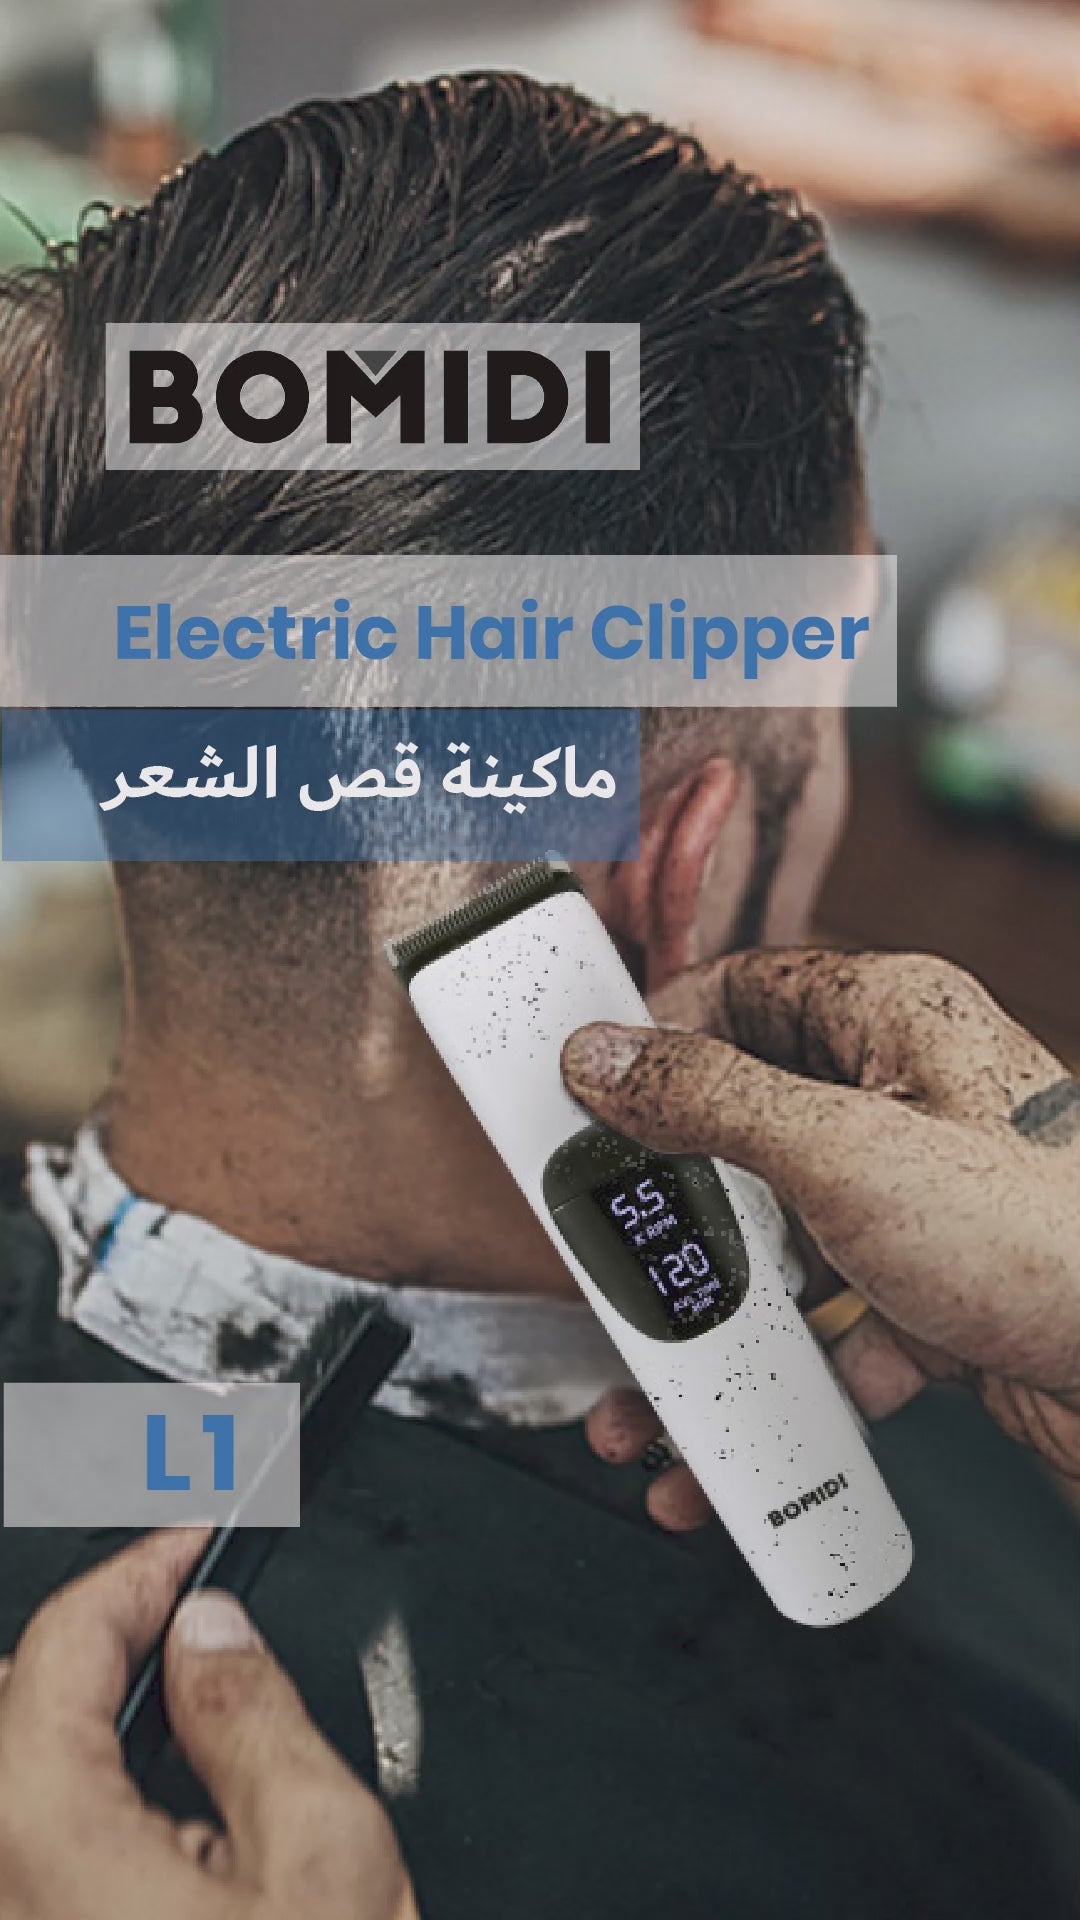 ماكينة قص الشعر الكهربائية من بوميدي L1، ماكينة حلاقة قابلة لإعادة الشحن بشاشة LCD - أبيض